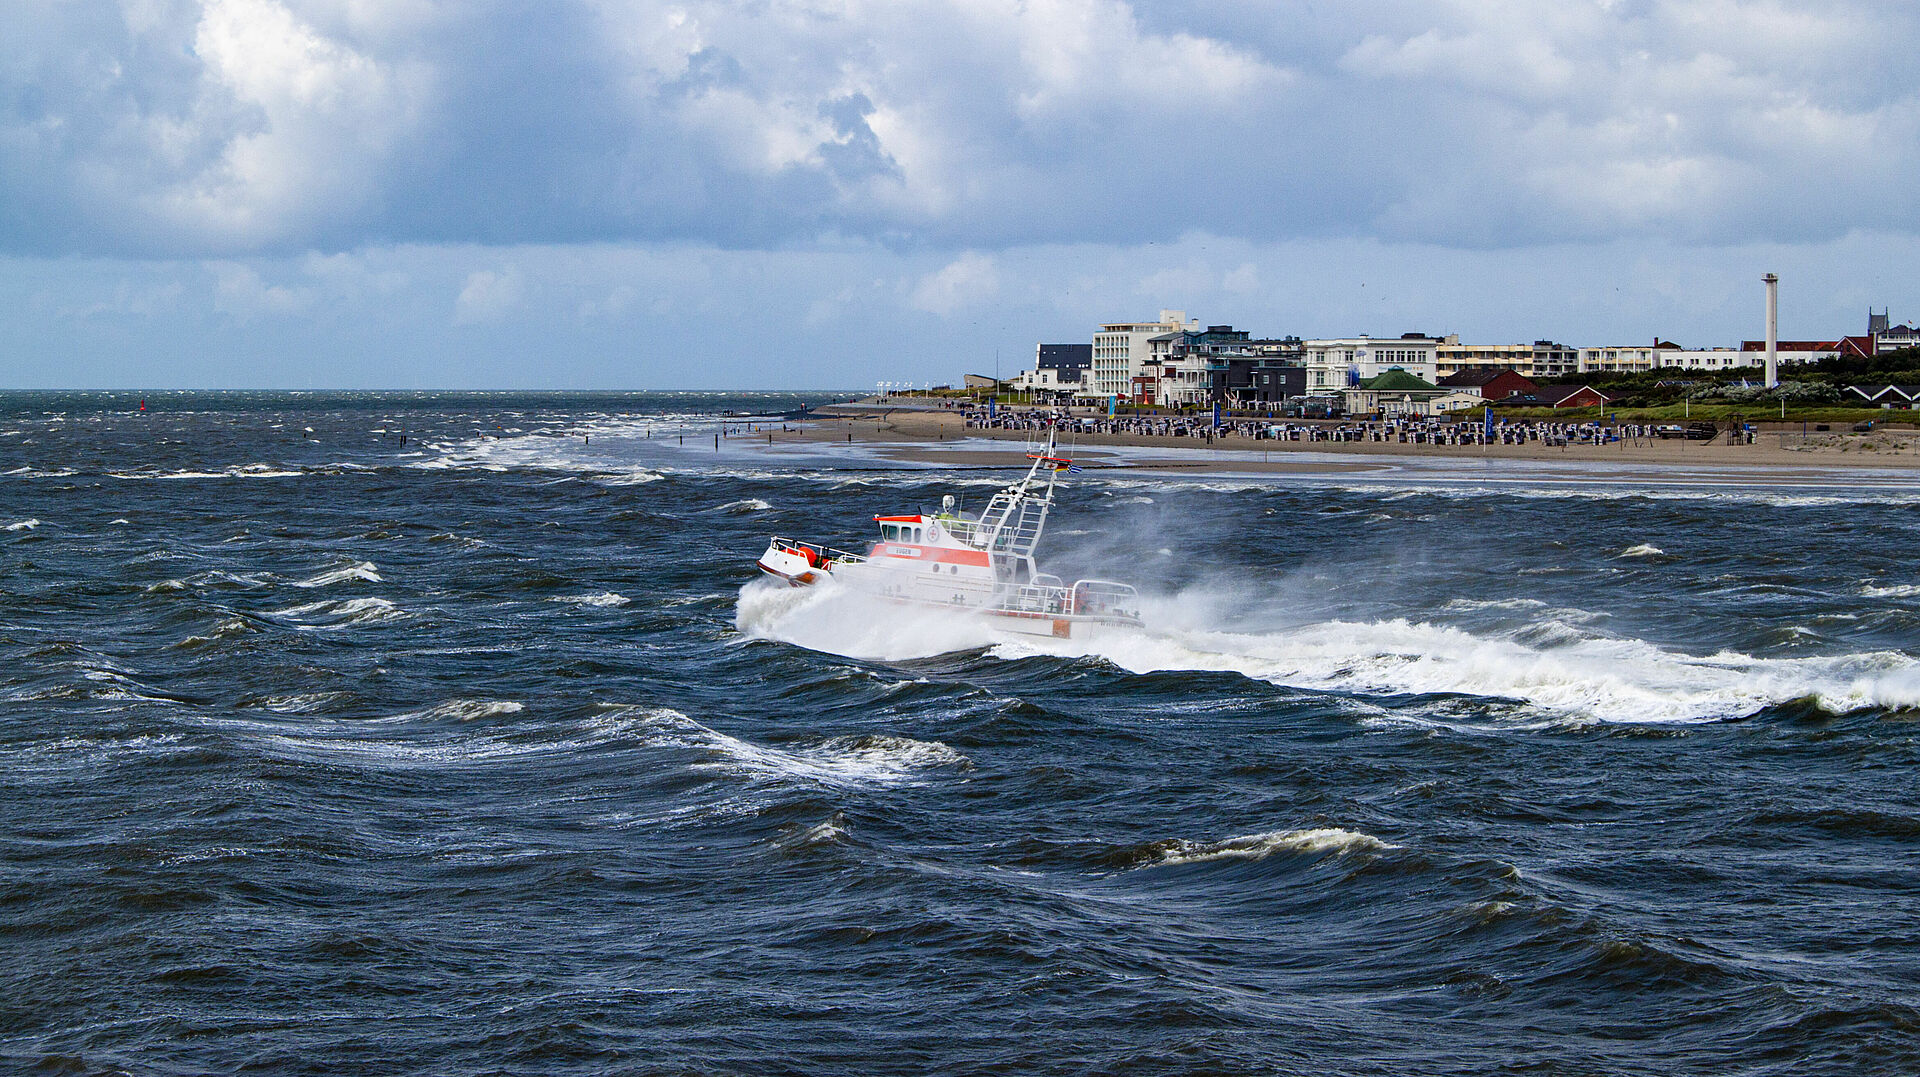 Vor der Kulisse des Norderneyer Strandes verlässt der Seenotrettungskreuzer EUGEN den Hafen Richtung offene Nordsee. Die Wellen schlagen Gischt.